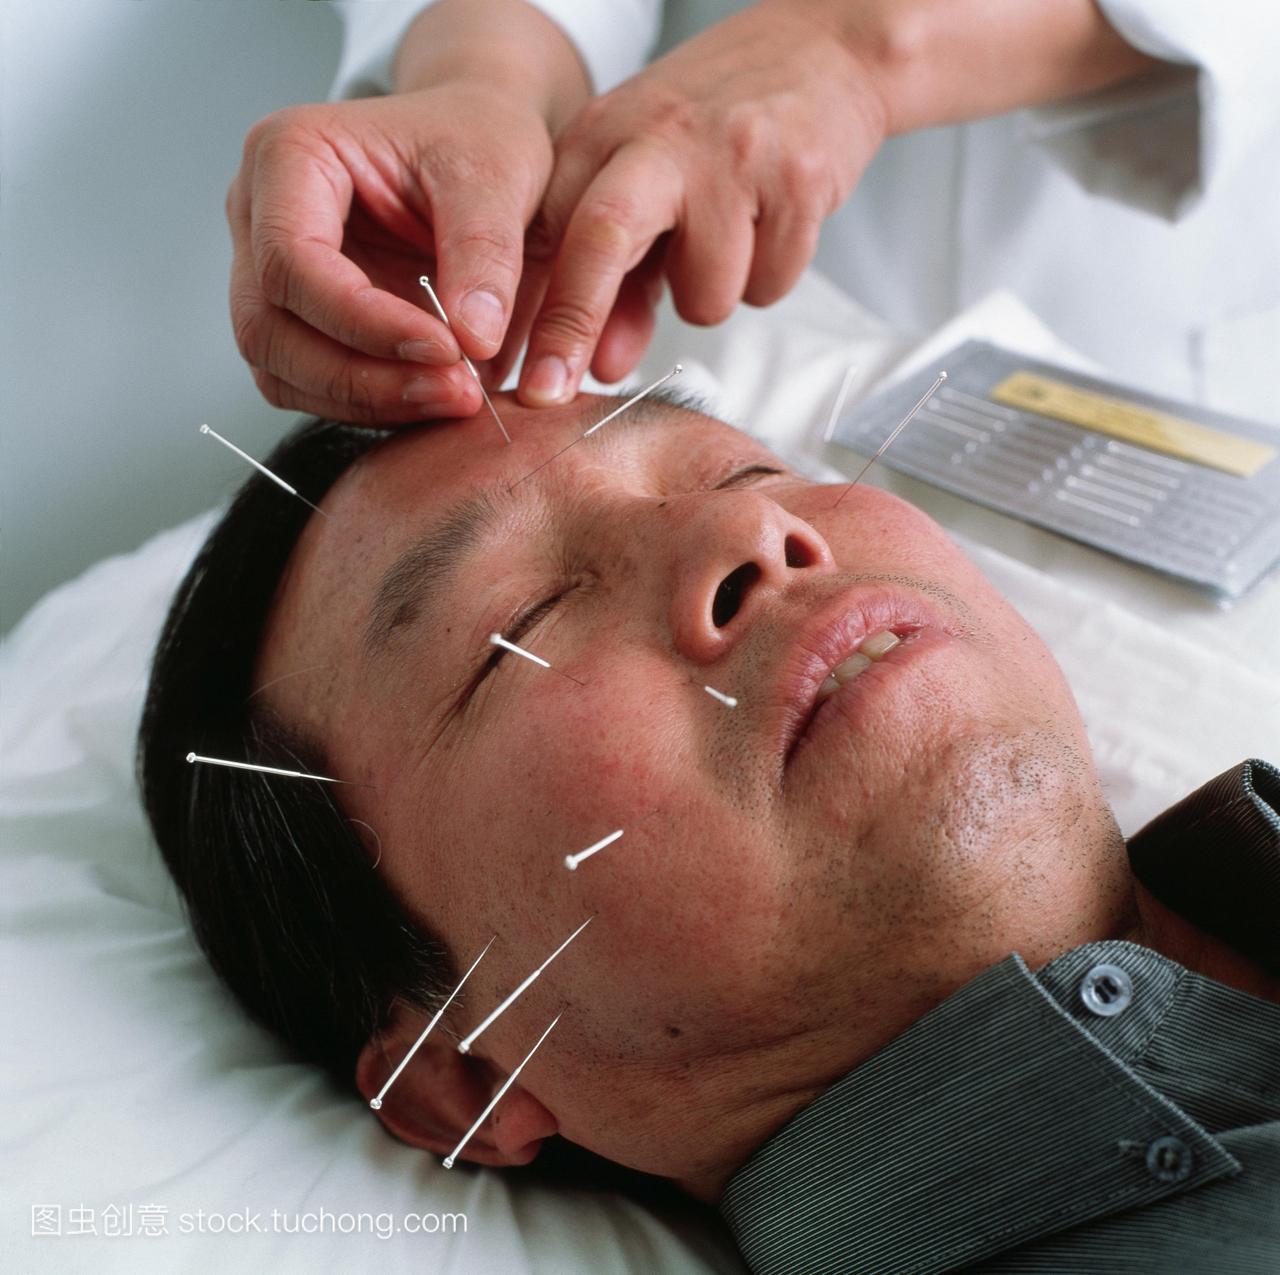 模型发布。针灸。针灸师将针头插入一个人的脸